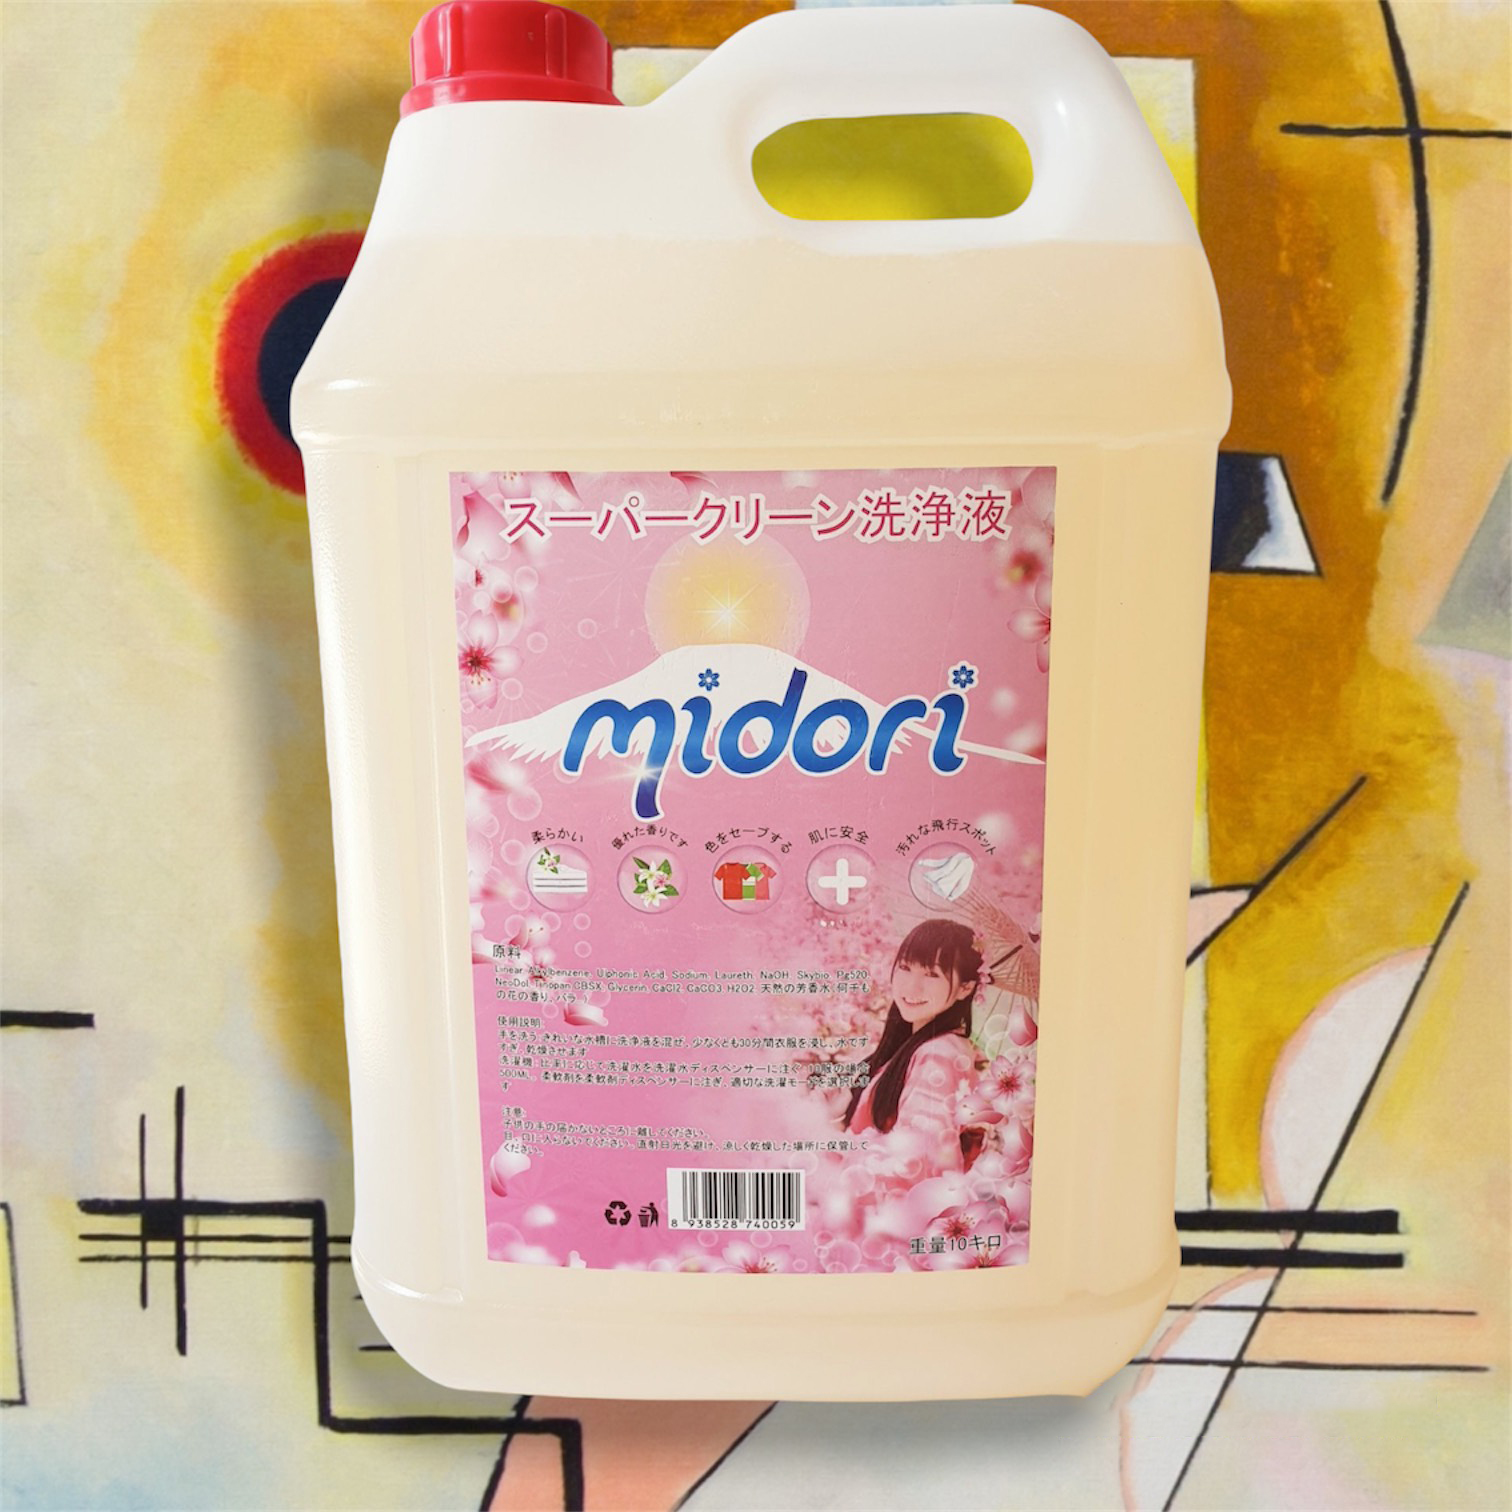 Nước giặt Midori can 10 lít